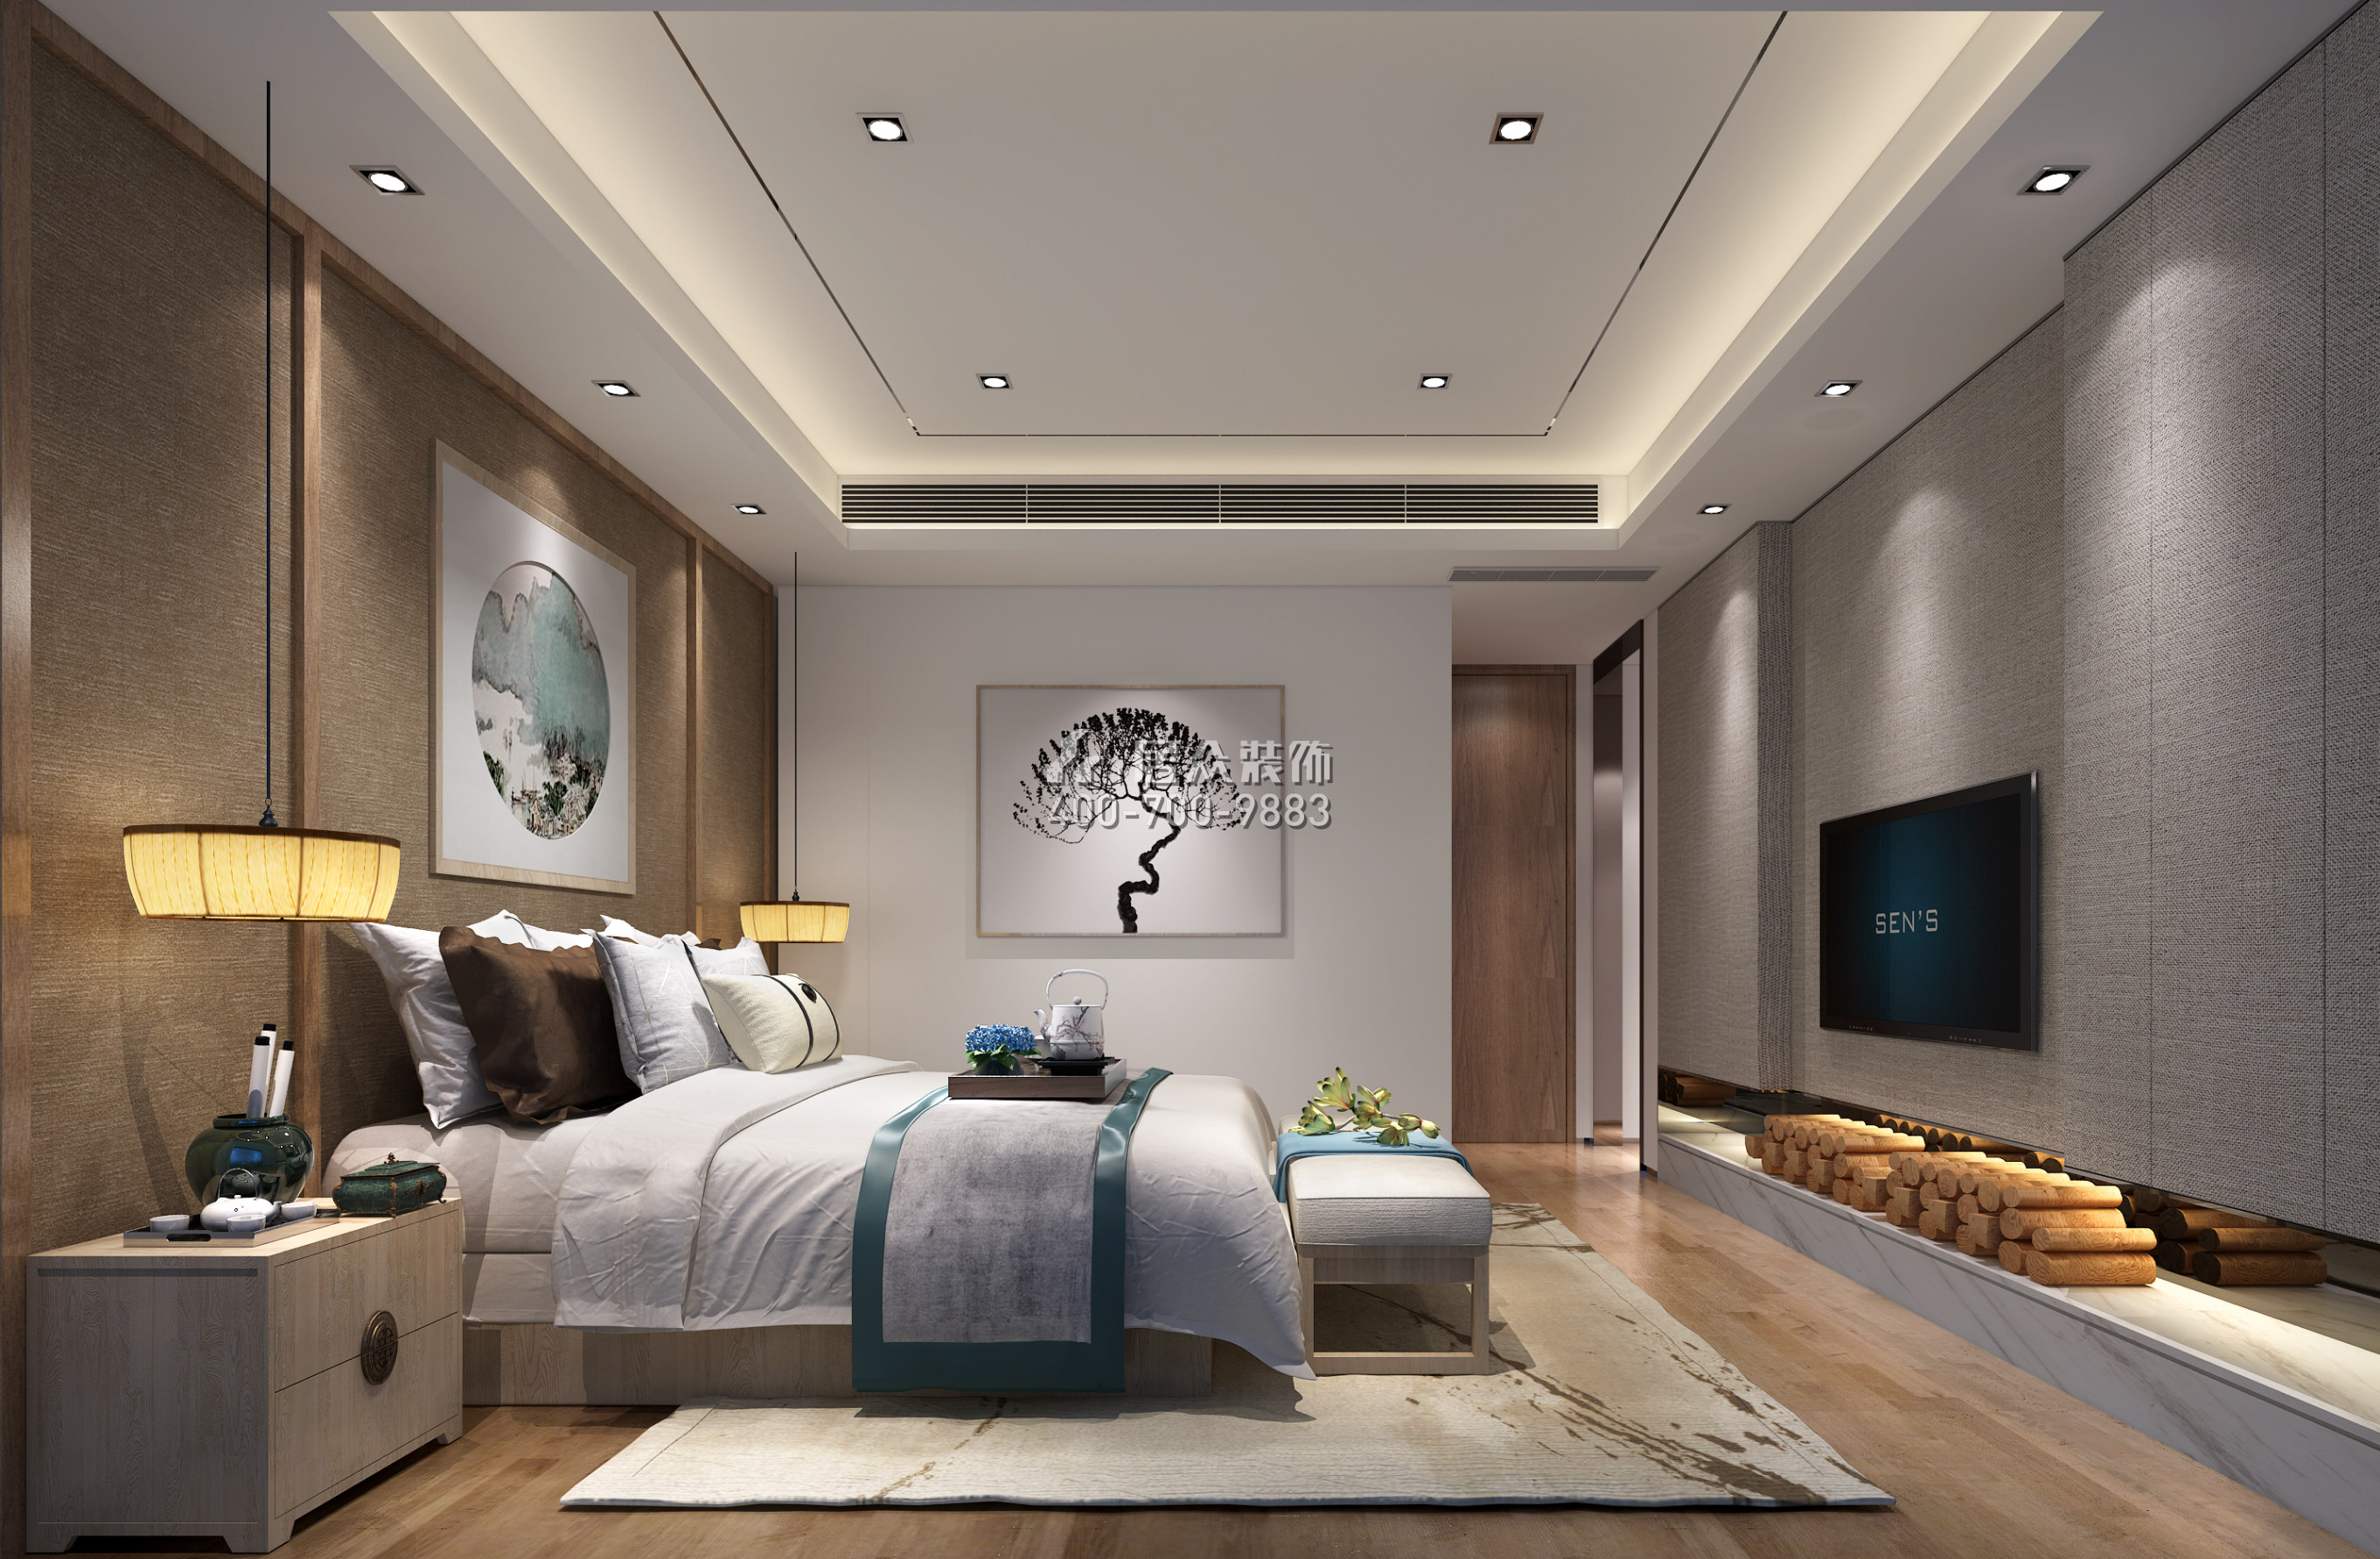 九號公館220平方米現代簡約風格復式戶型臥室裝修效果圖